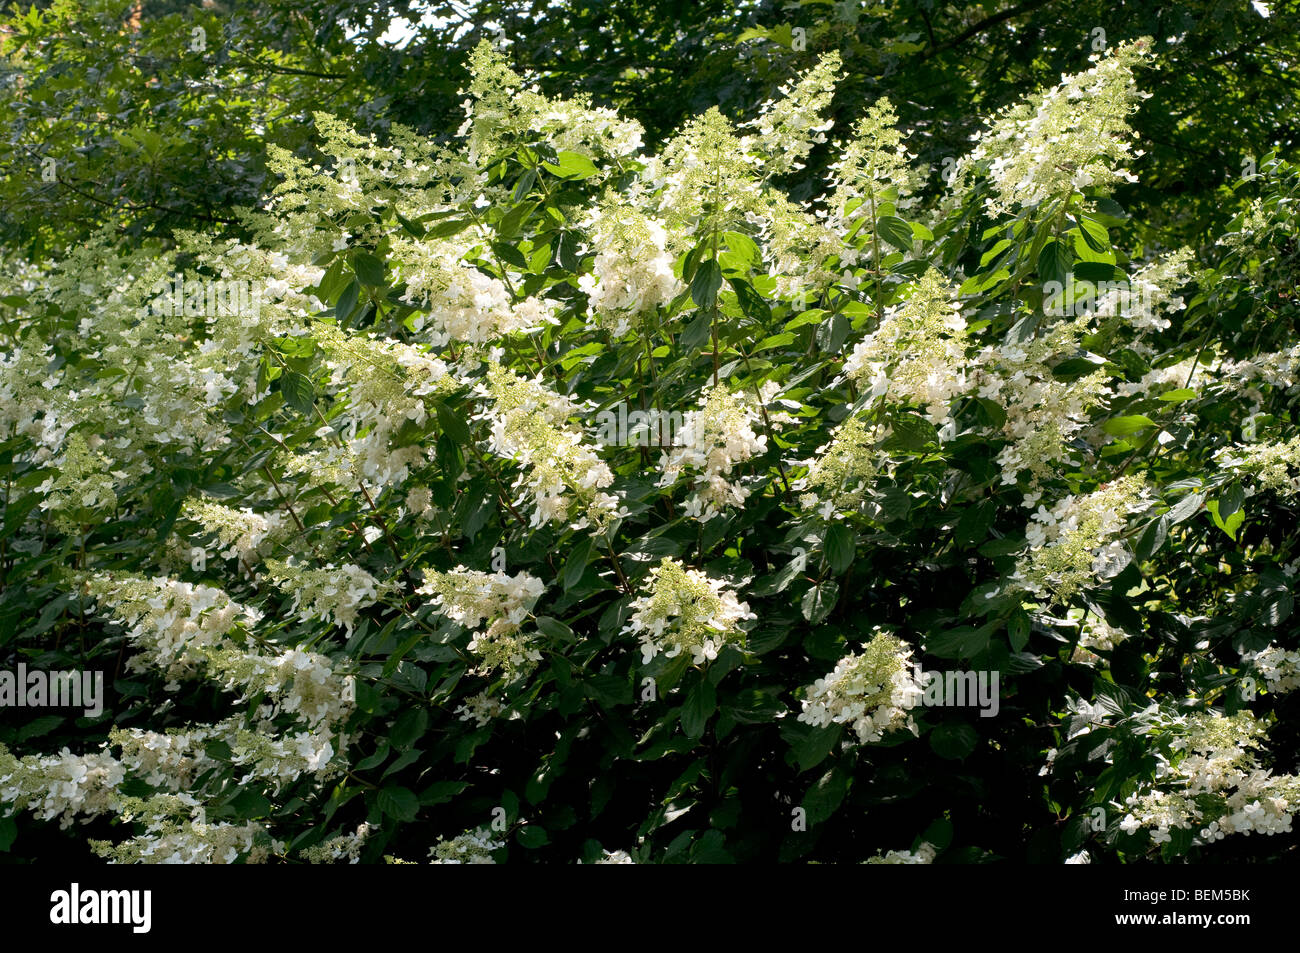 Hydrangea paniculata GREENSPIRE Stock Photo